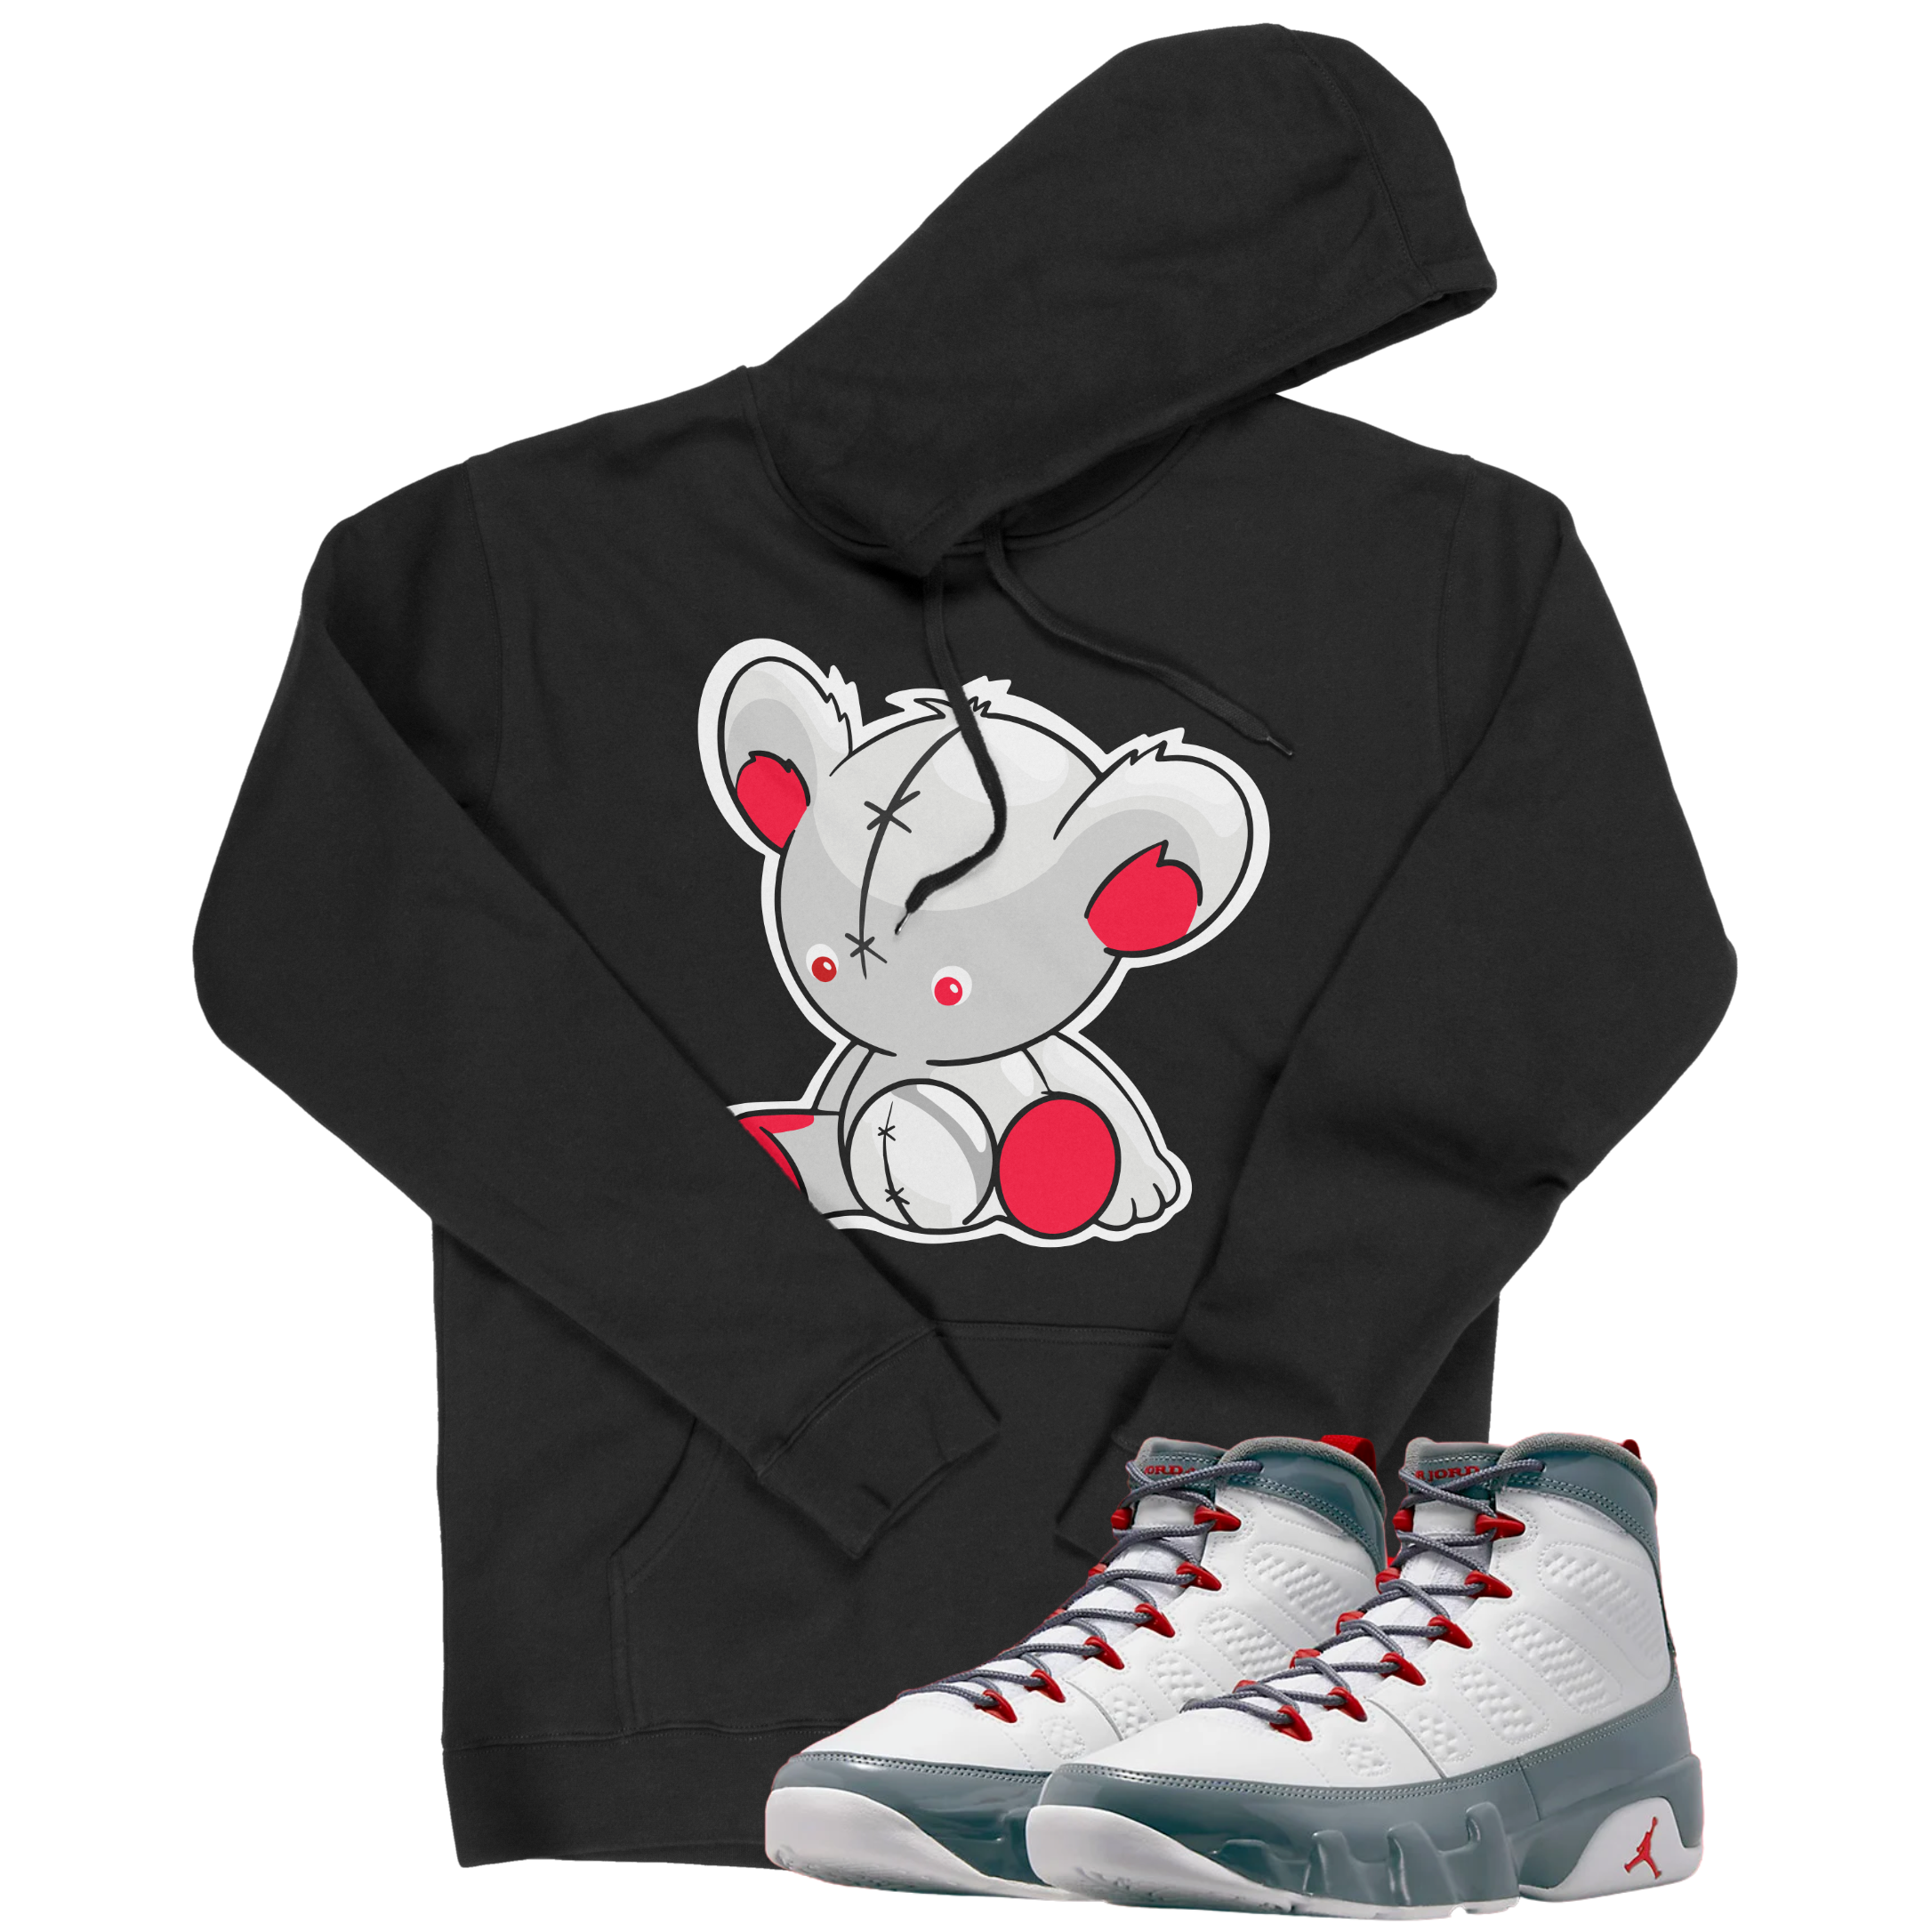 Air Jordan 9 Fire Red I Bear Hoodie | Air Jordan 9 Fire Red | Sneaker Match | Jordan Matching Outfits